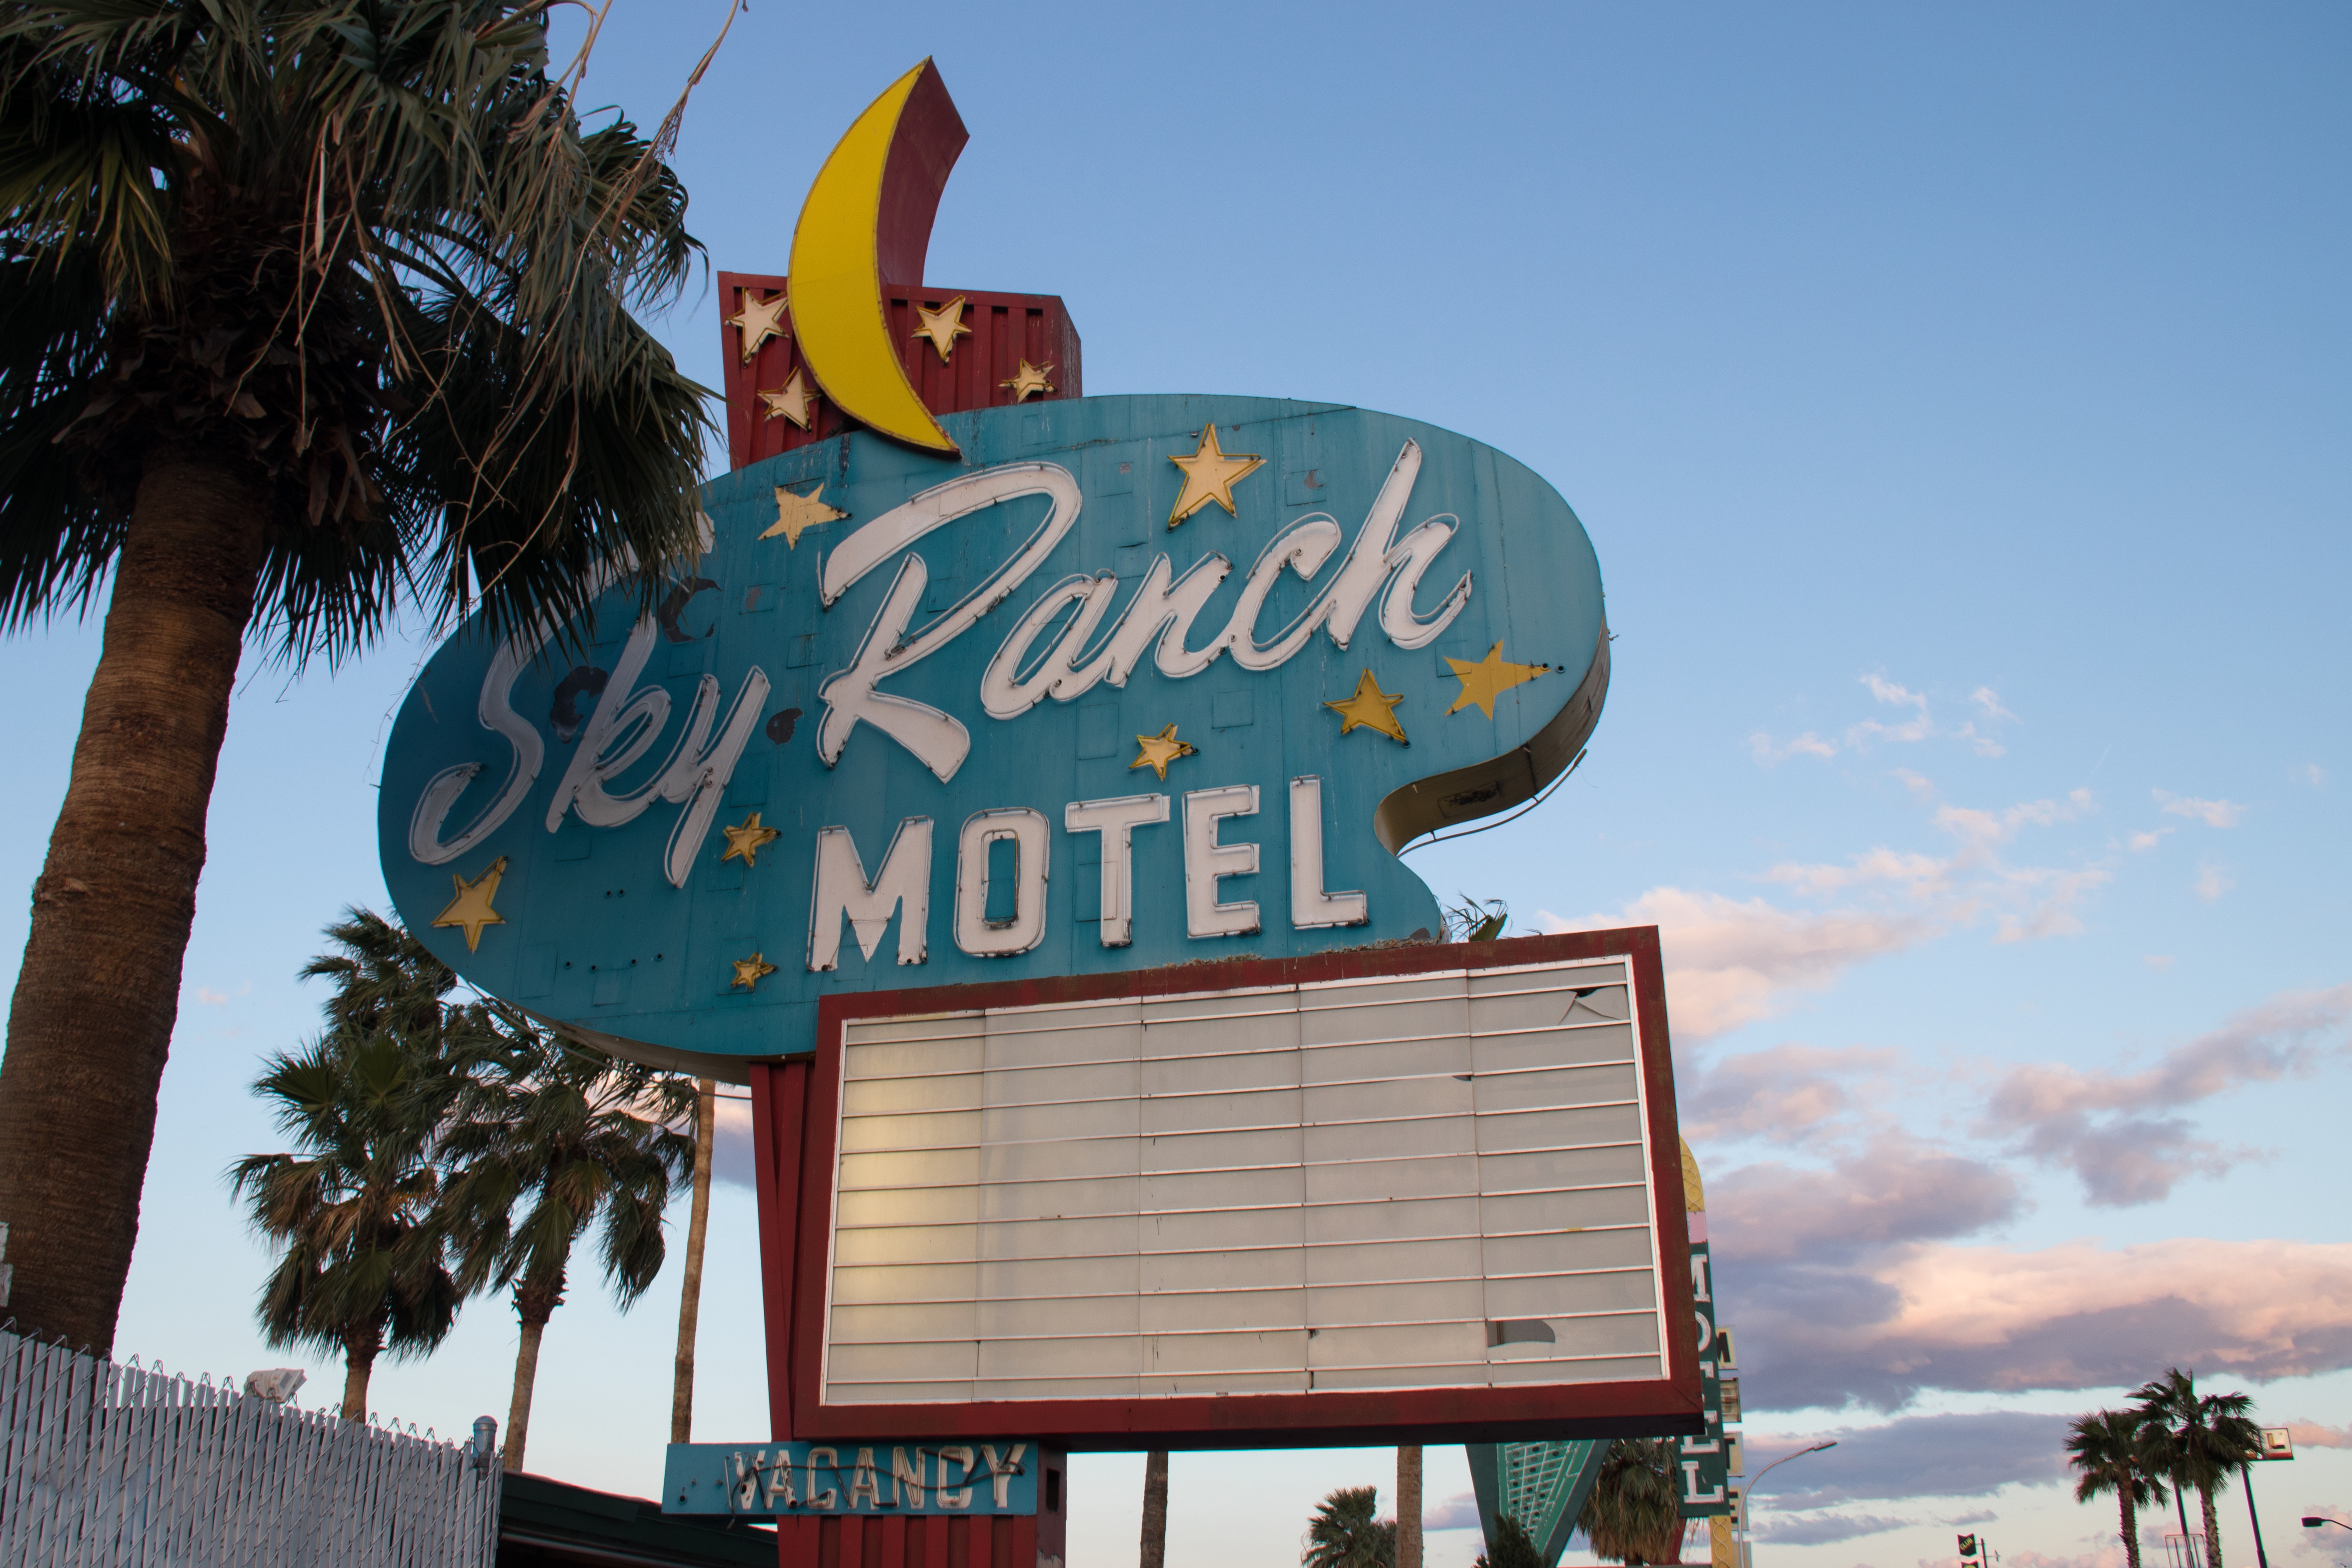 Photographs of Sky Ranch Motel sign, Las Vegas (Nev.), April 18, 2017